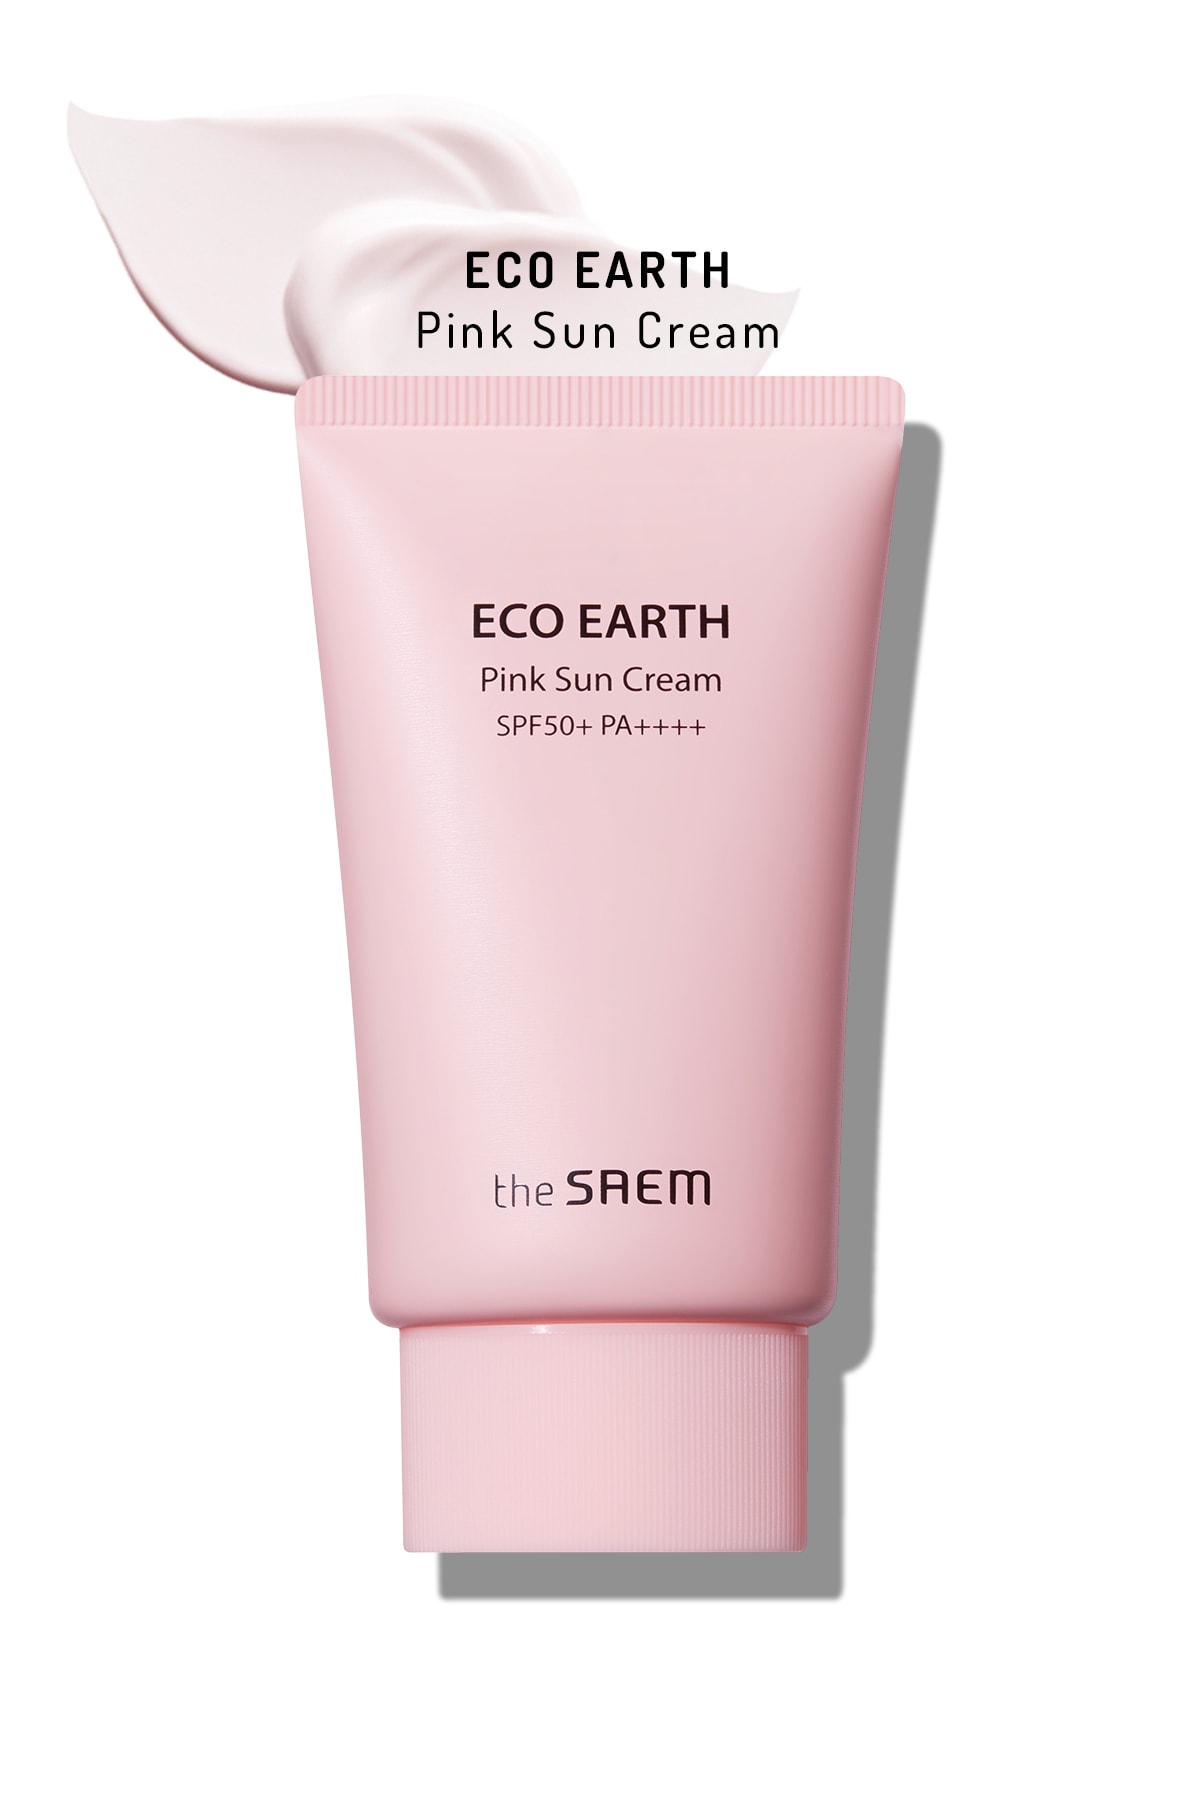 THE SAEM Ton Dengeleyici Işıltı Veren Güneş Kremi 50 gr - Eco Earth Pink Sun Cream SPF 50+ ve PA++++